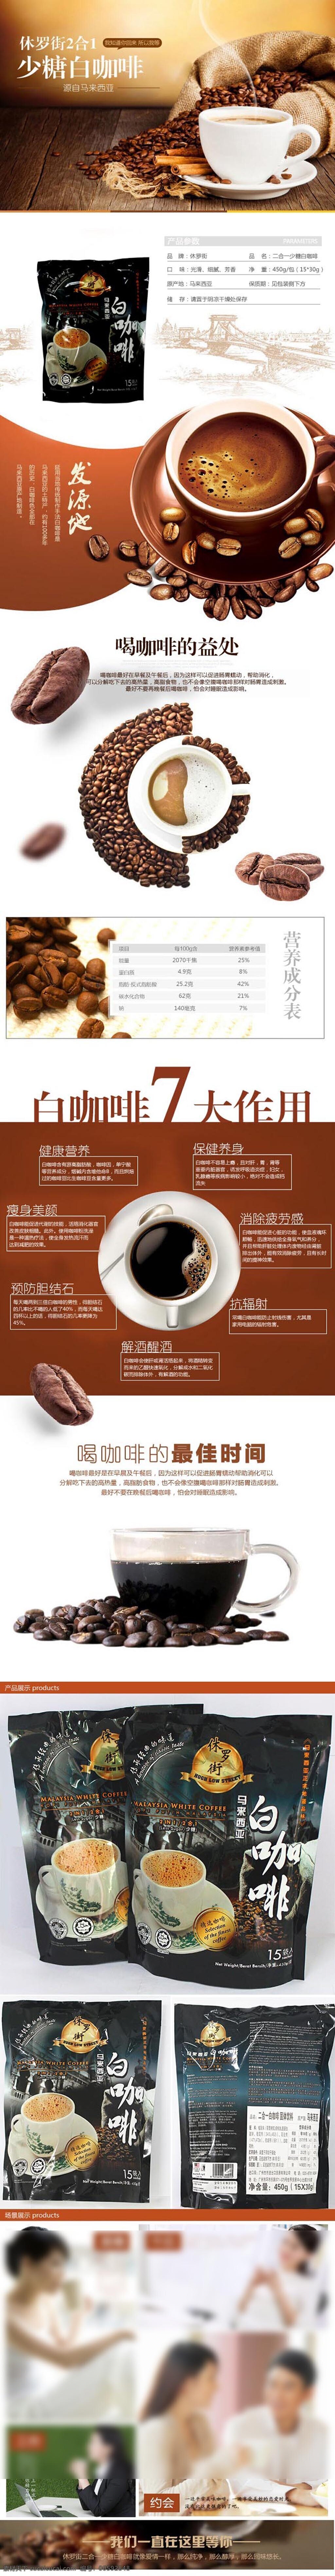 咖啡 商品 详情 页 模板 咖啡详情页 咖啡模板 咖啡介绍页 咖啡介绍 食用类 淘宝界面设计 淘宝装修模板 白色